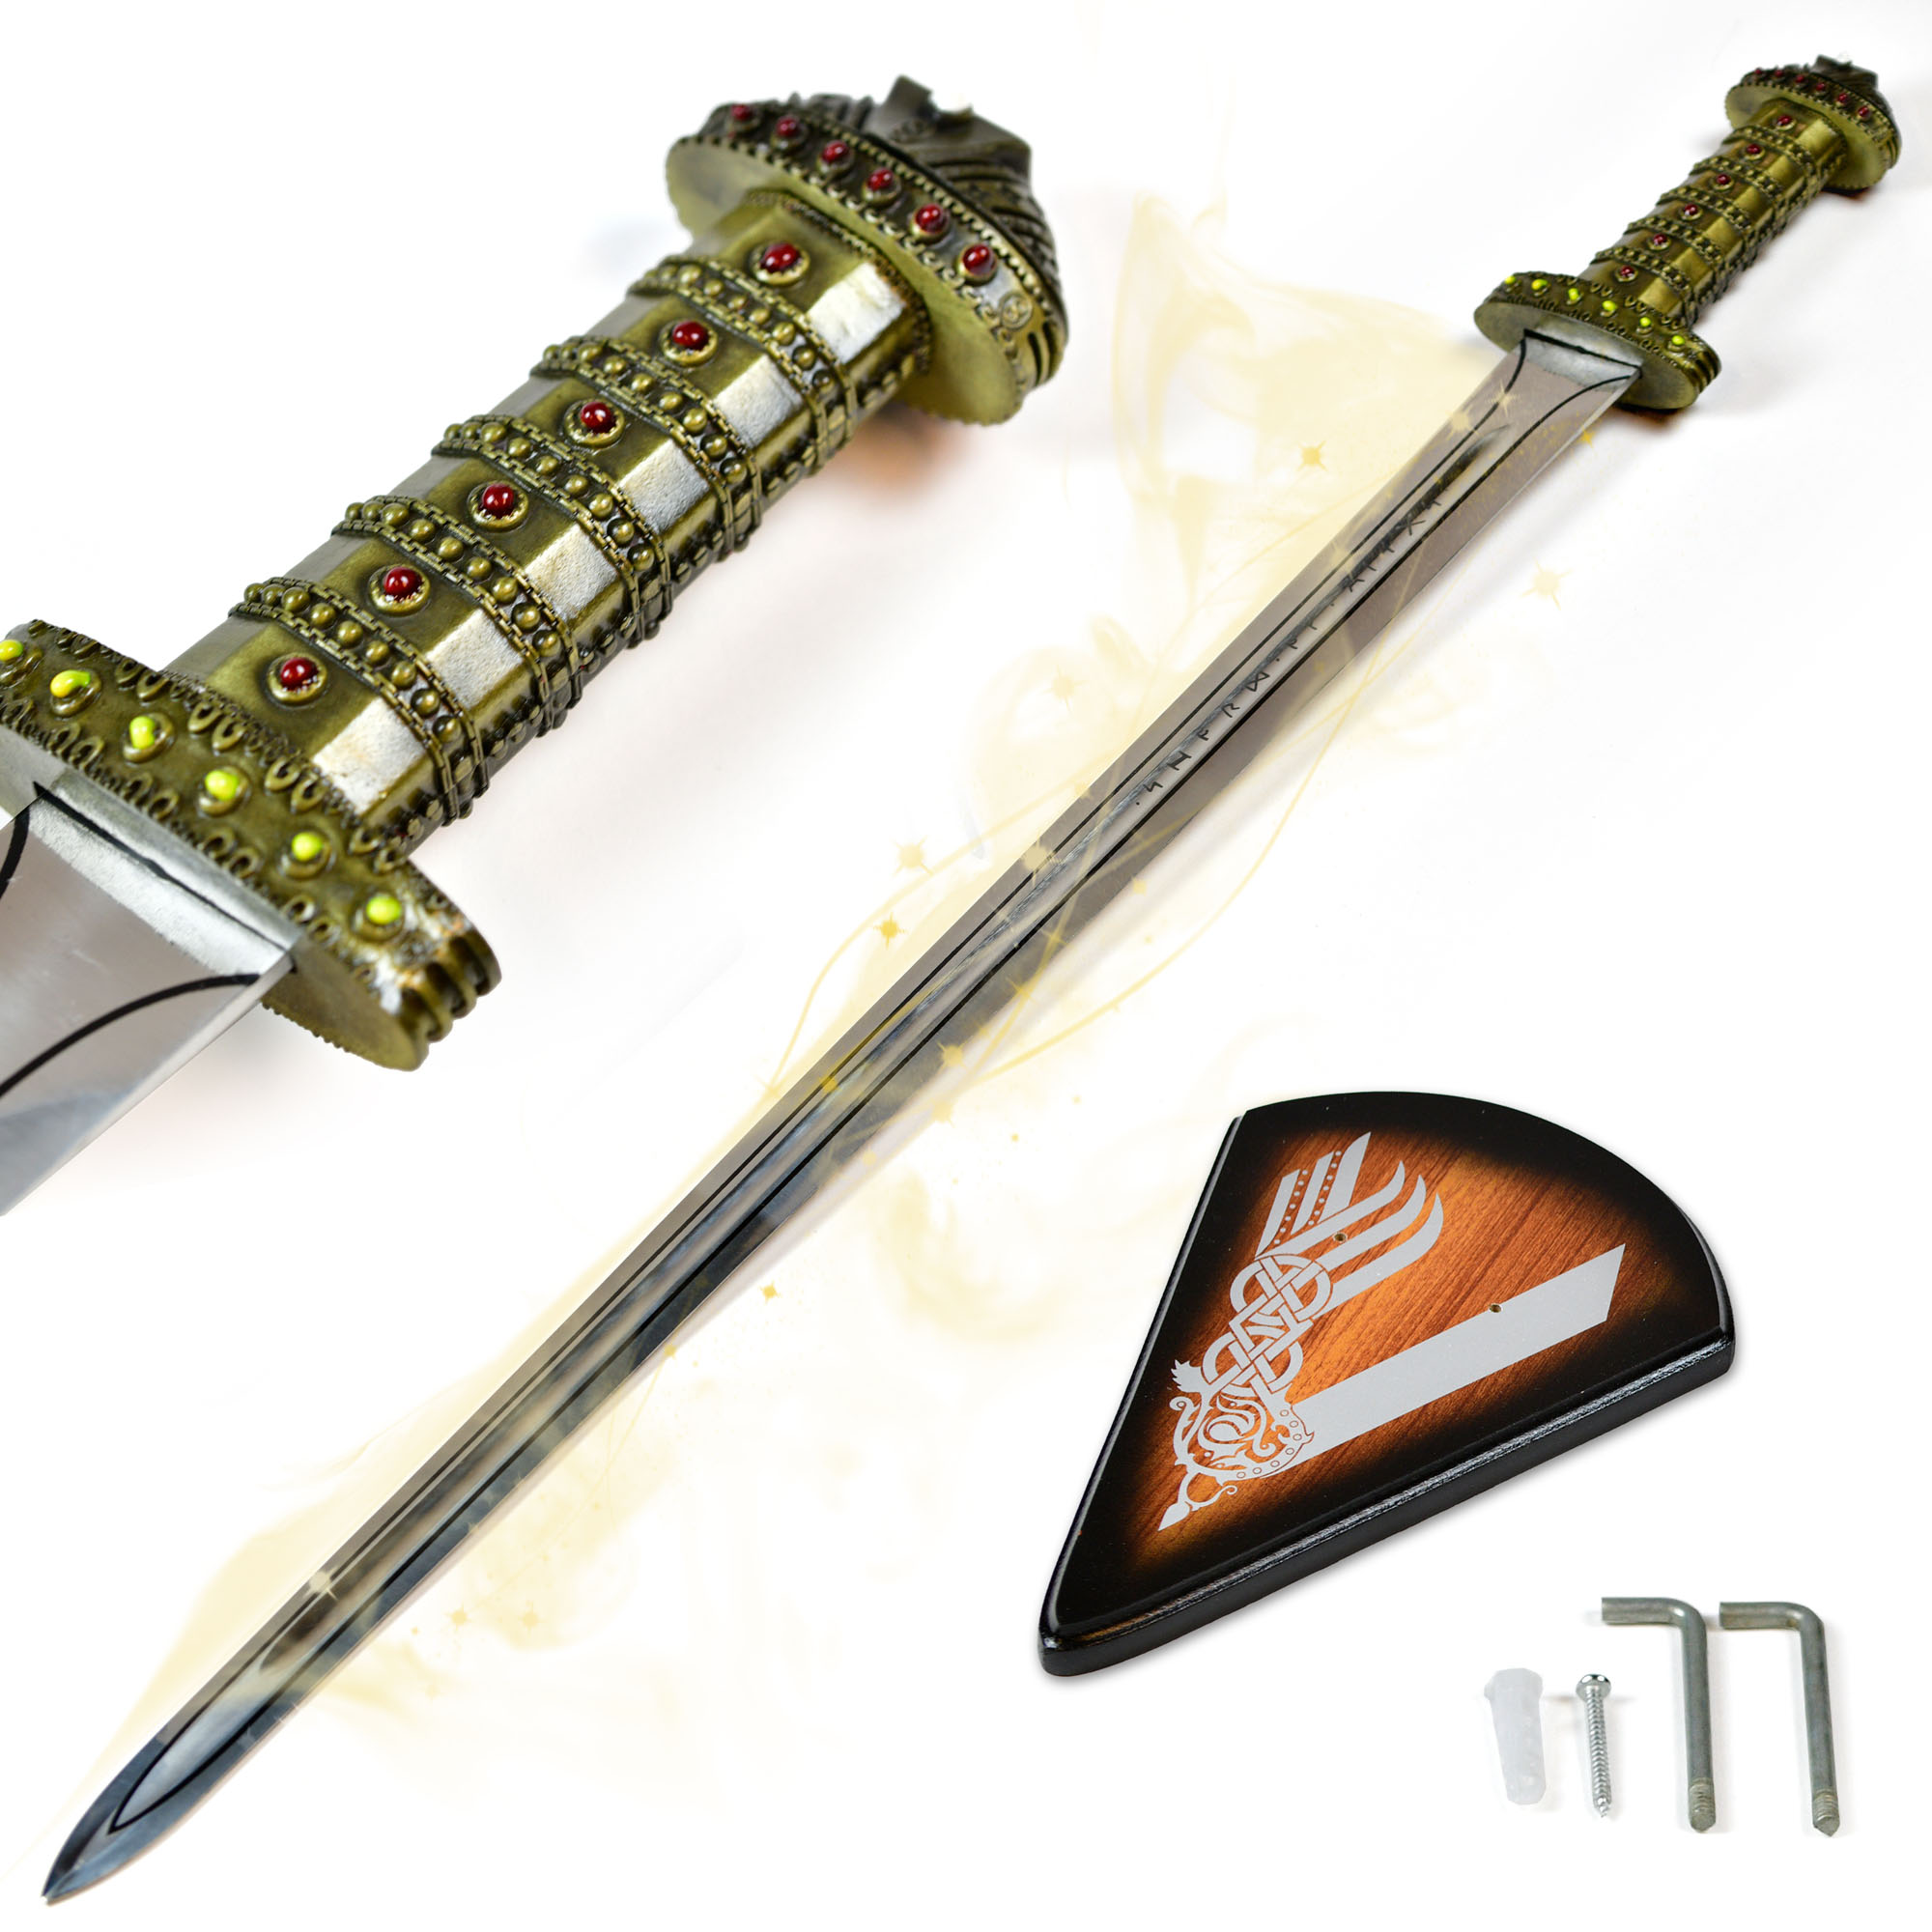 Vikings - Ragnar's Sword of Kings